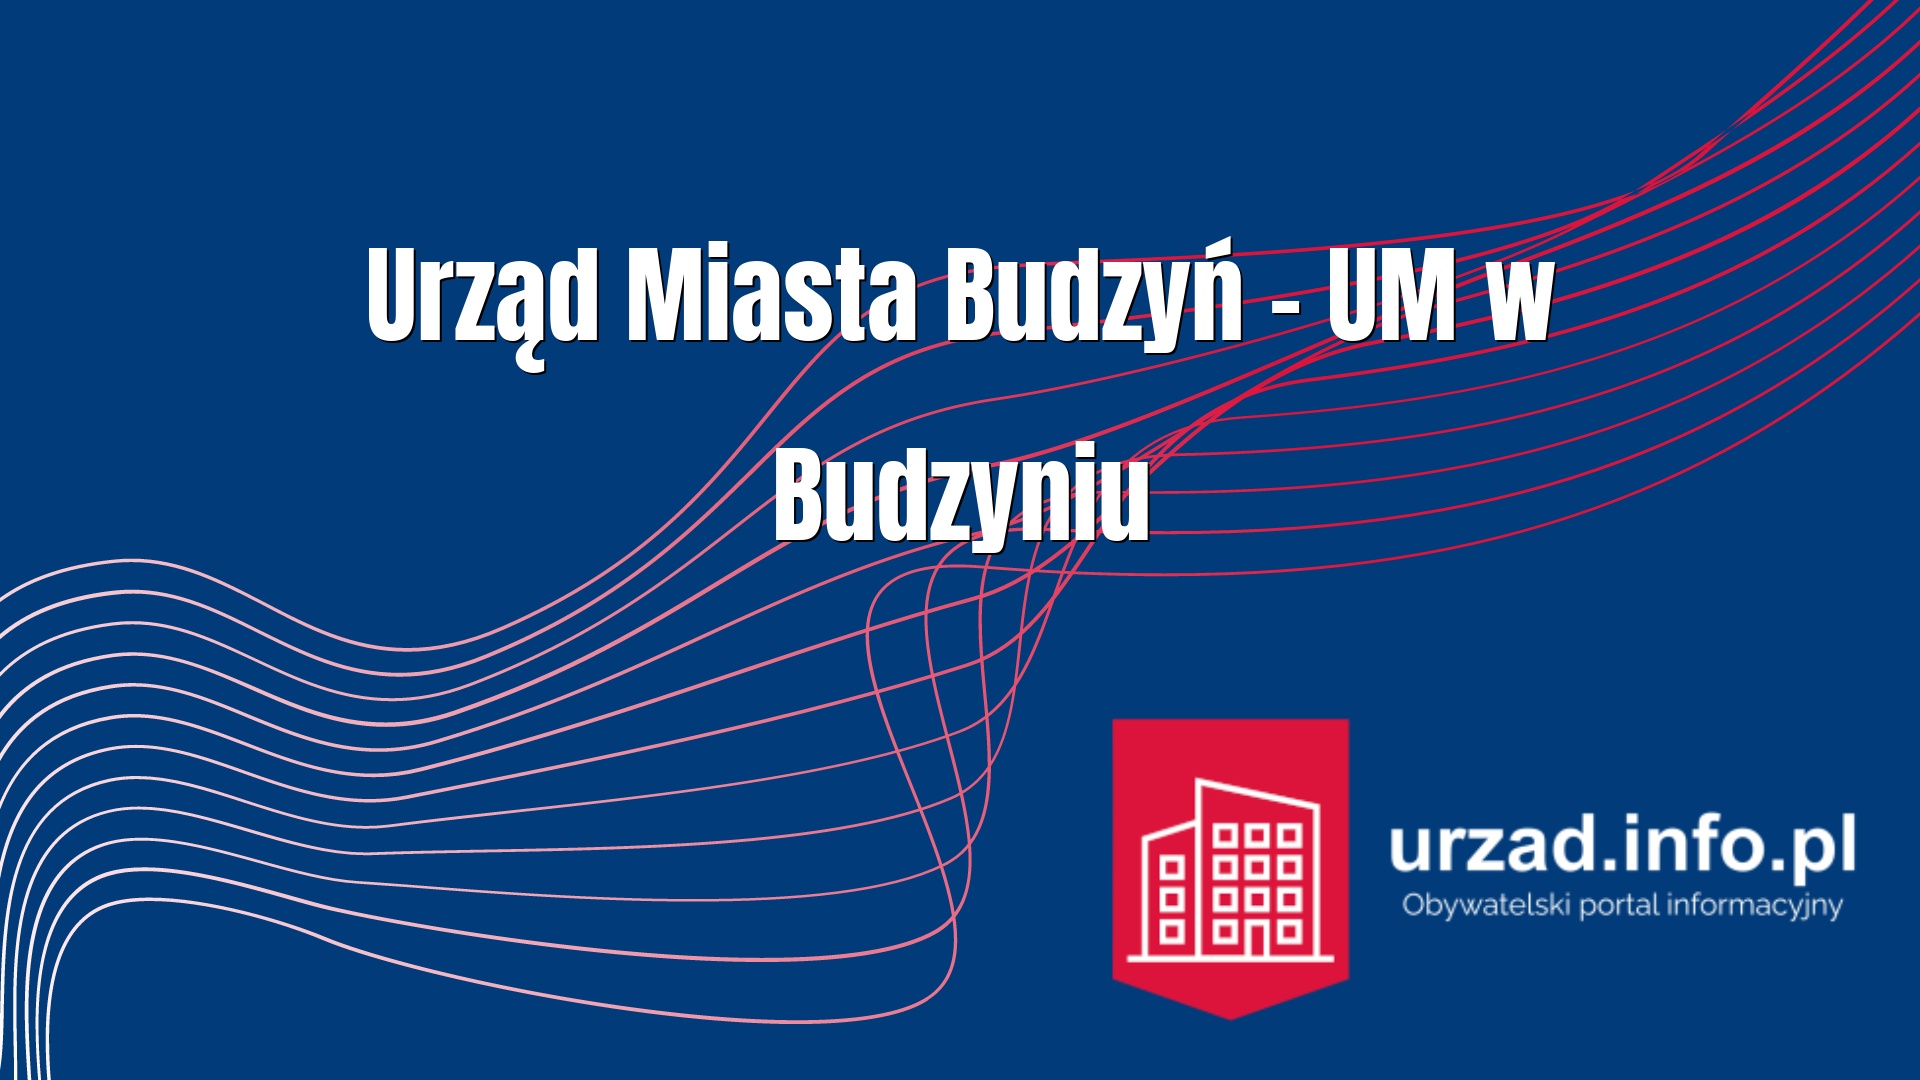 Urząd Miasta Budzyń – UM w Budzyniu